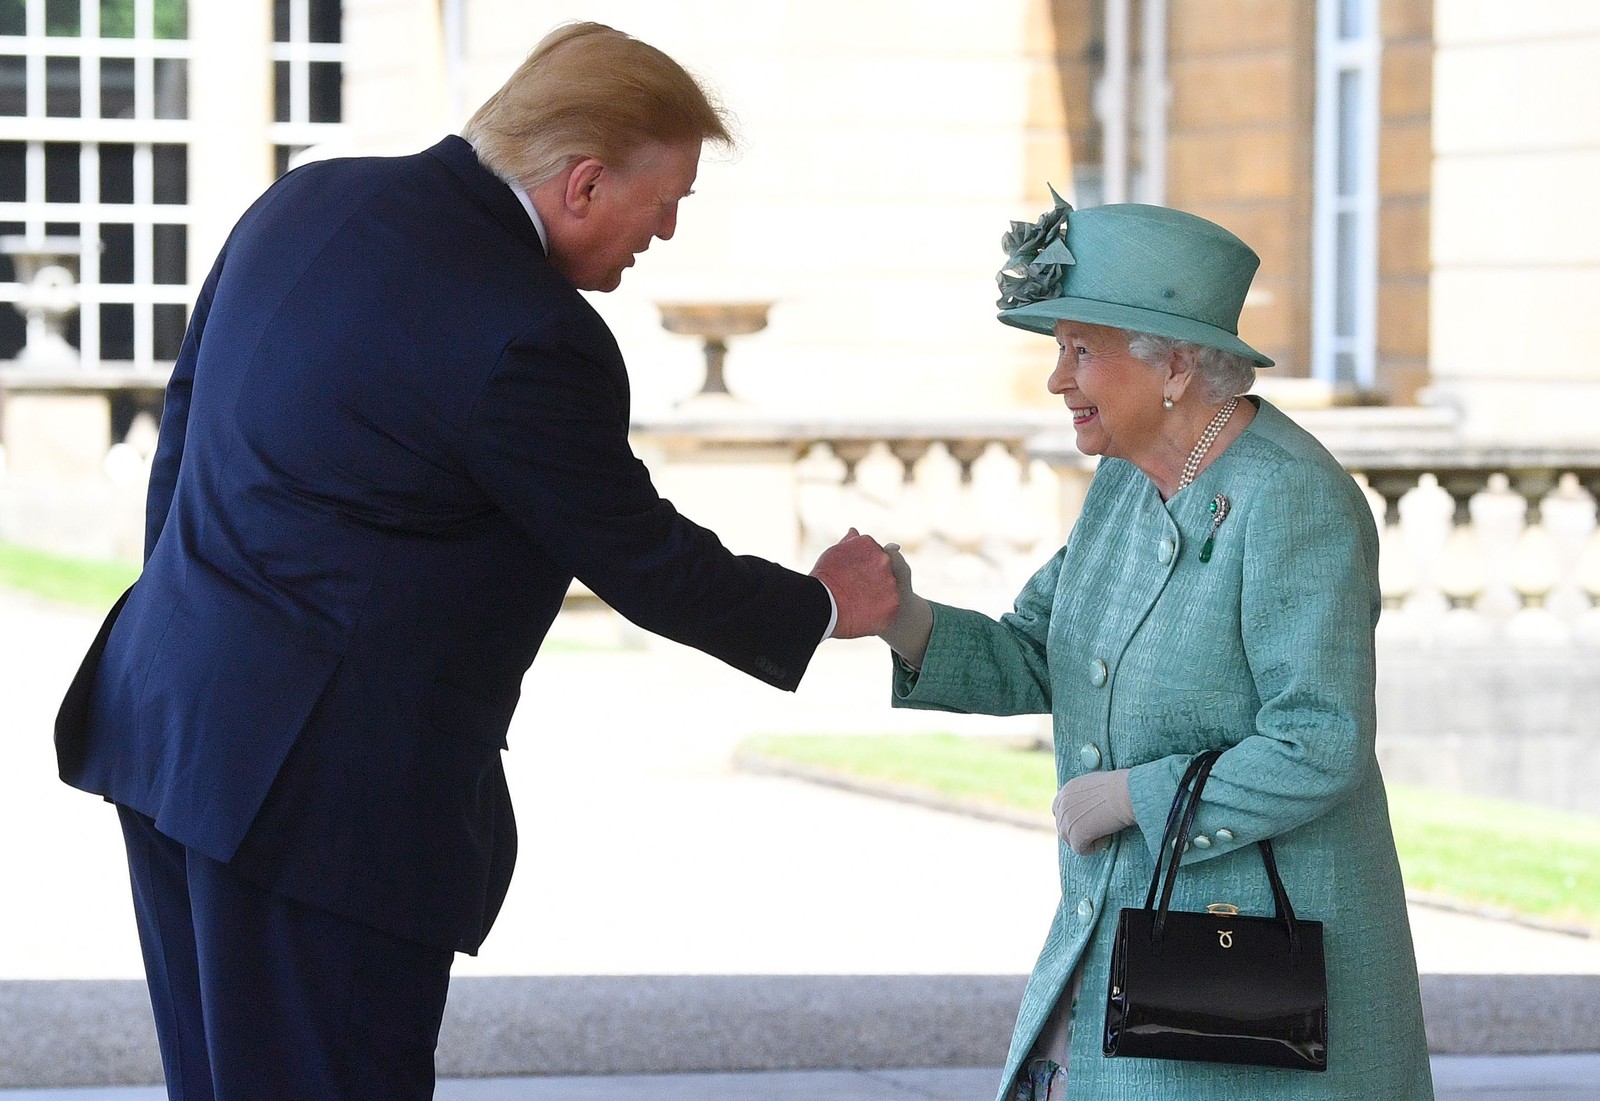 Em visita oficial à Inglaterra, o presidente Donald Trump, recebido pela rainha Elizabeth II no Palácio de Buckingham, chamou de “fracassado” oprefeito de Londres, Sadiq Khan, que o criticou. Ele já havia sugerido, na véspera, que o país saia sem acordo e dê calote na União Europeia AFP - 03/06/2019